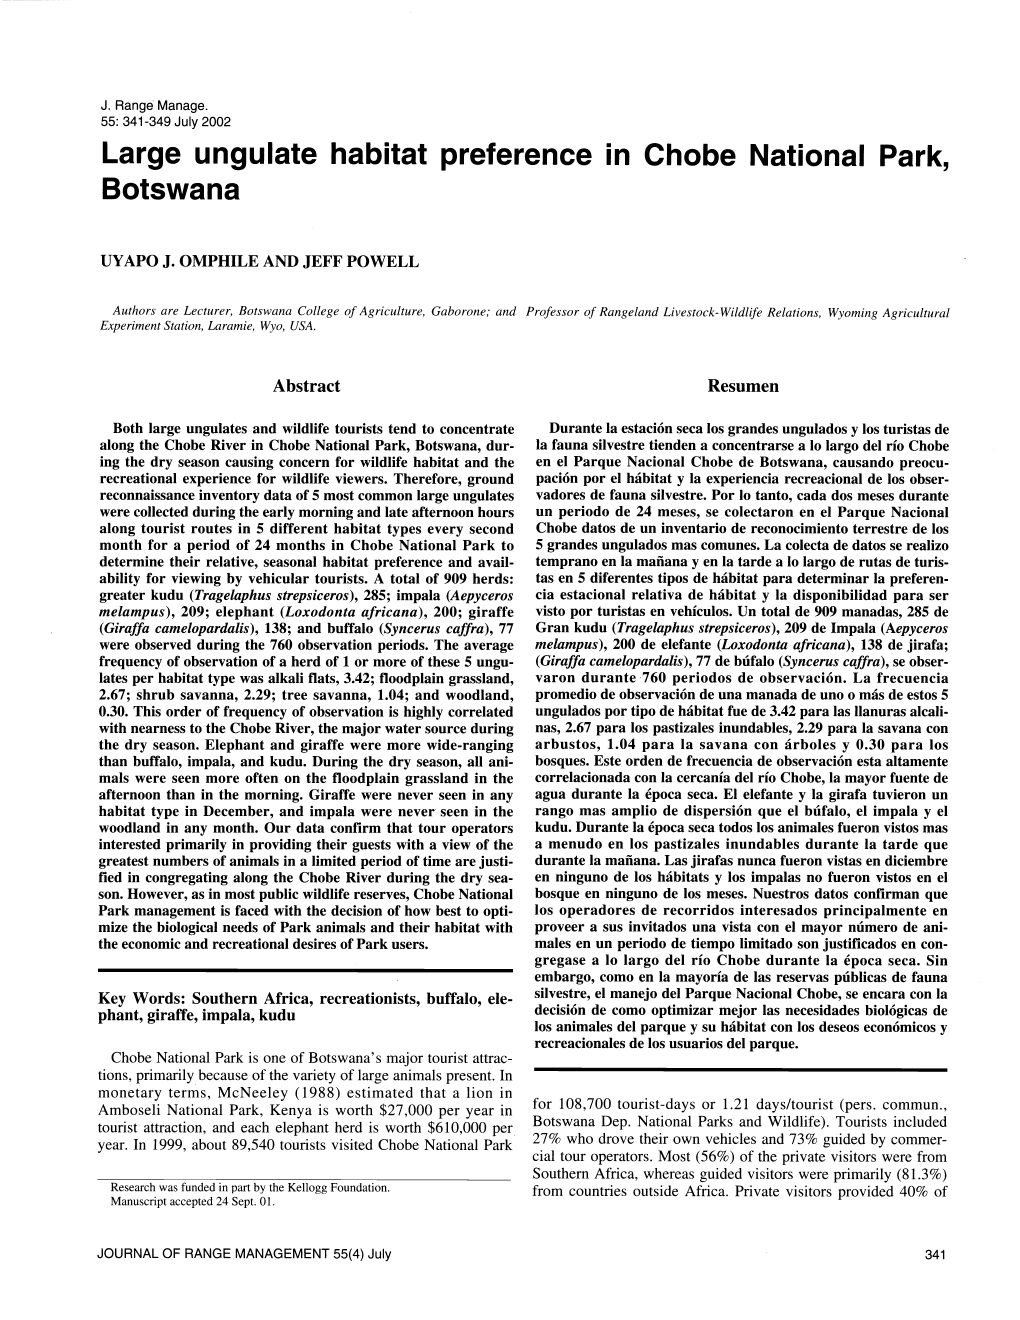 Large Ungulate Habitat Preference in Chobe National Park, Botswana